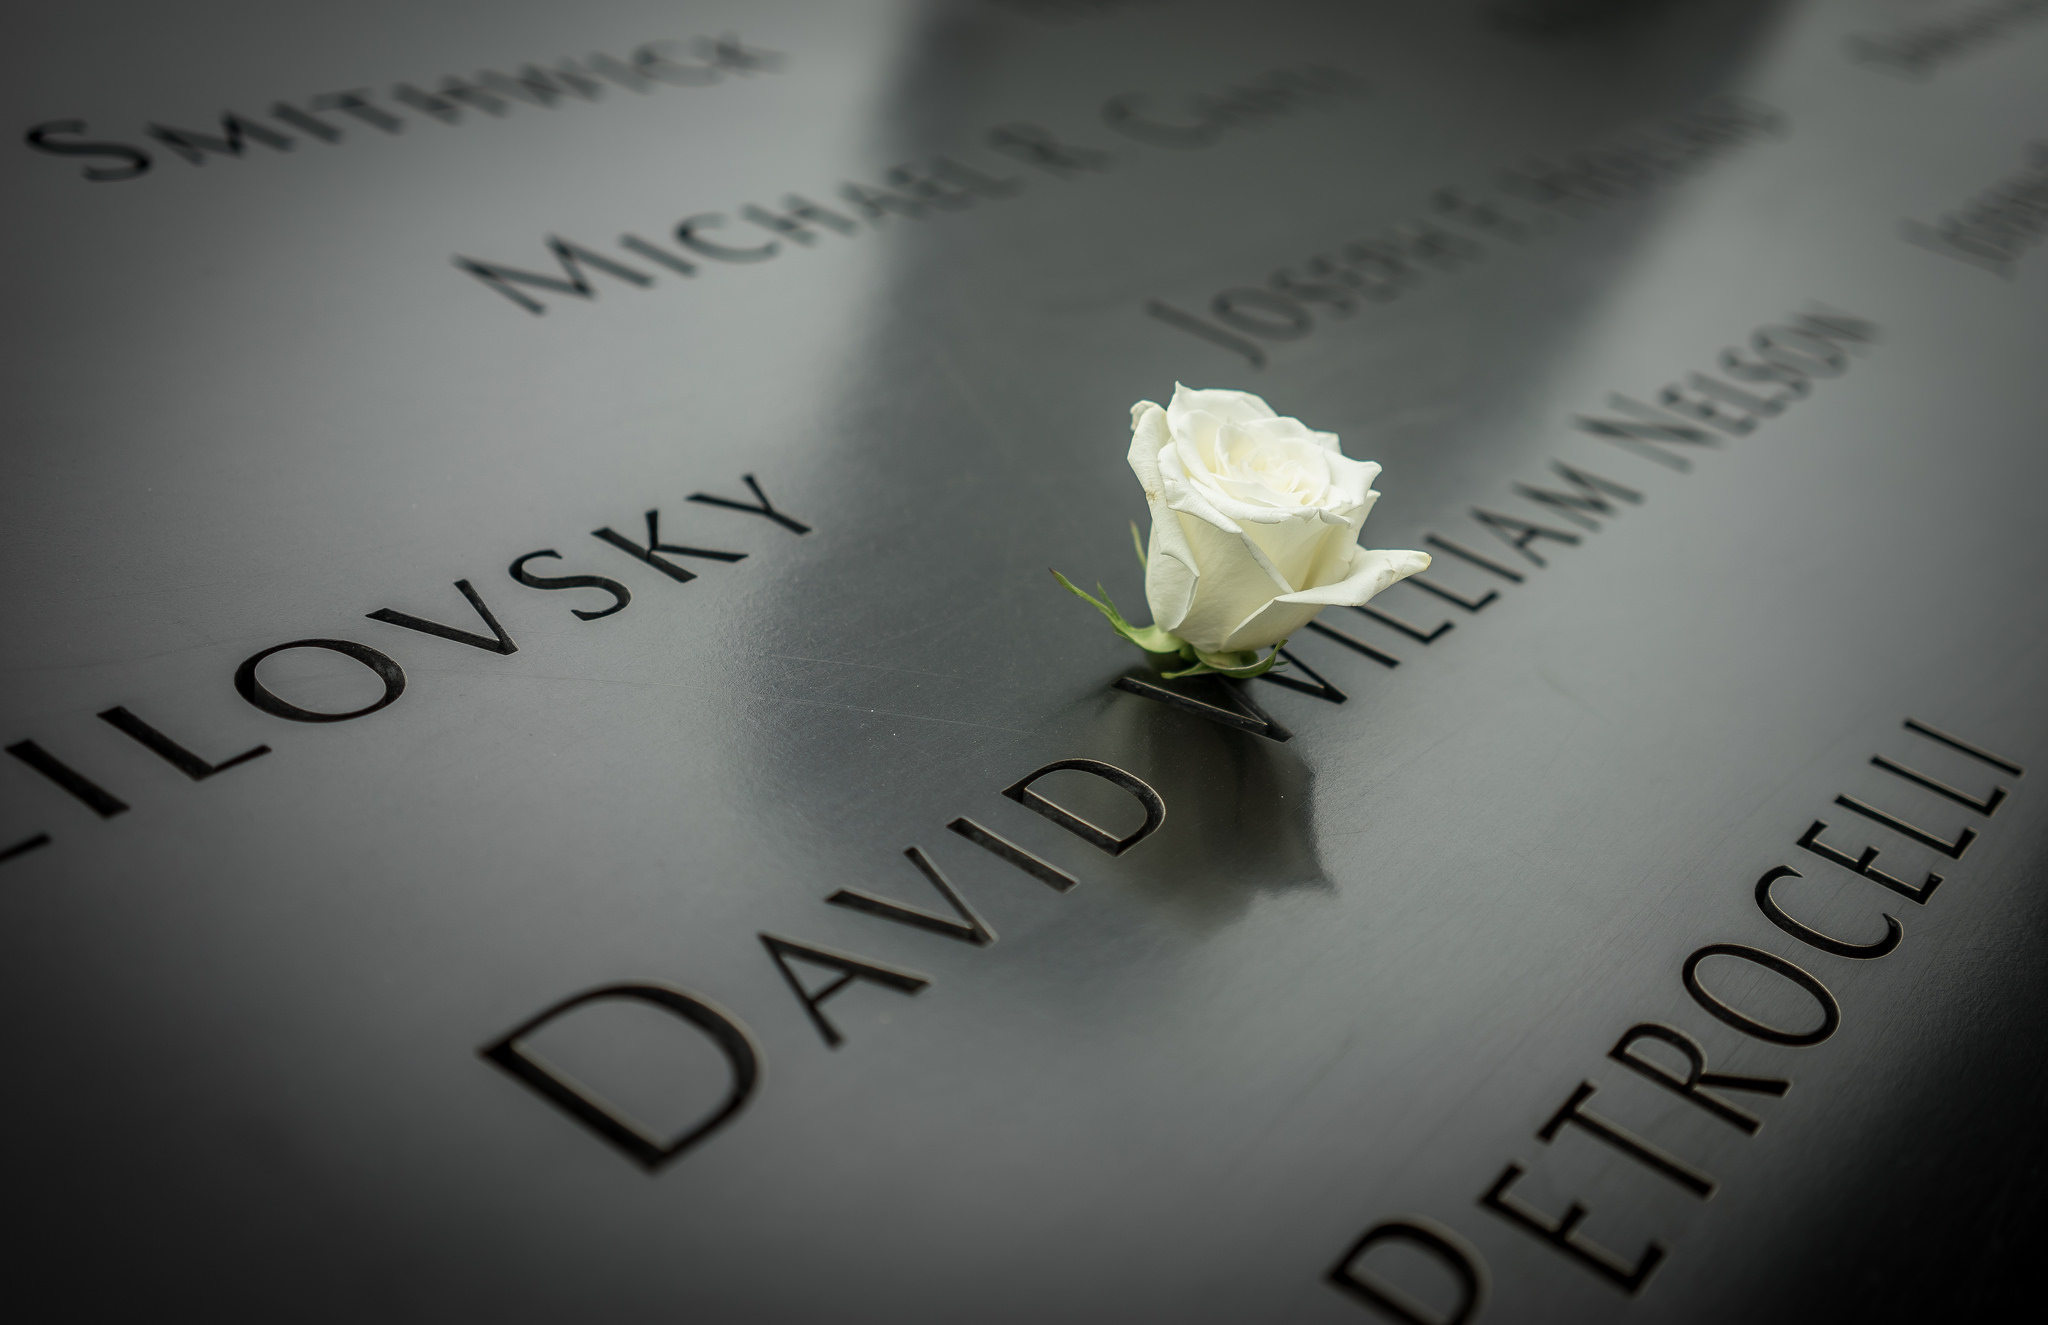  9/11 Memorial 